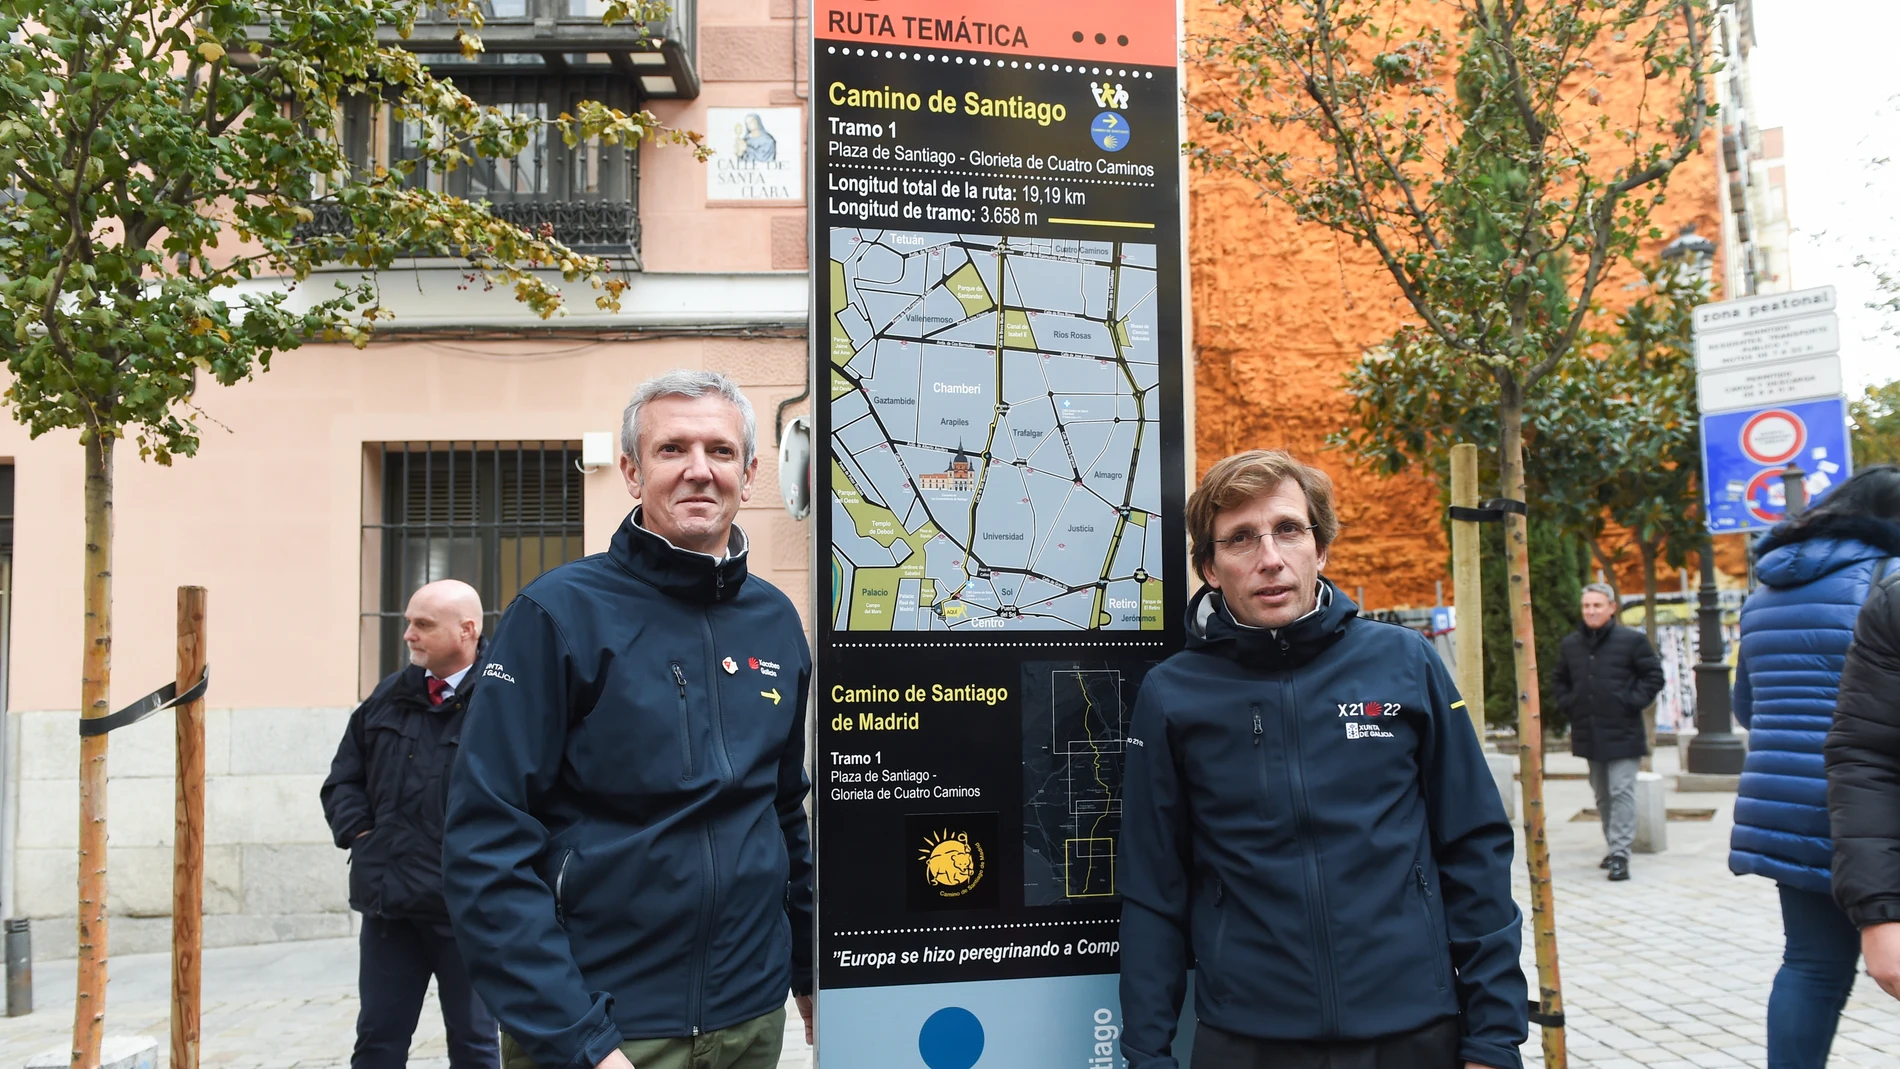 El alcalde de Madrid, José Luis Martínez-Almeida, y el presidente de la Xunta de Galicia, Alfonso Rueda, posan durante la inauguración de la nueva ruta saludable del Camino de Santiago, en la Plaza de Santiago de Madrid